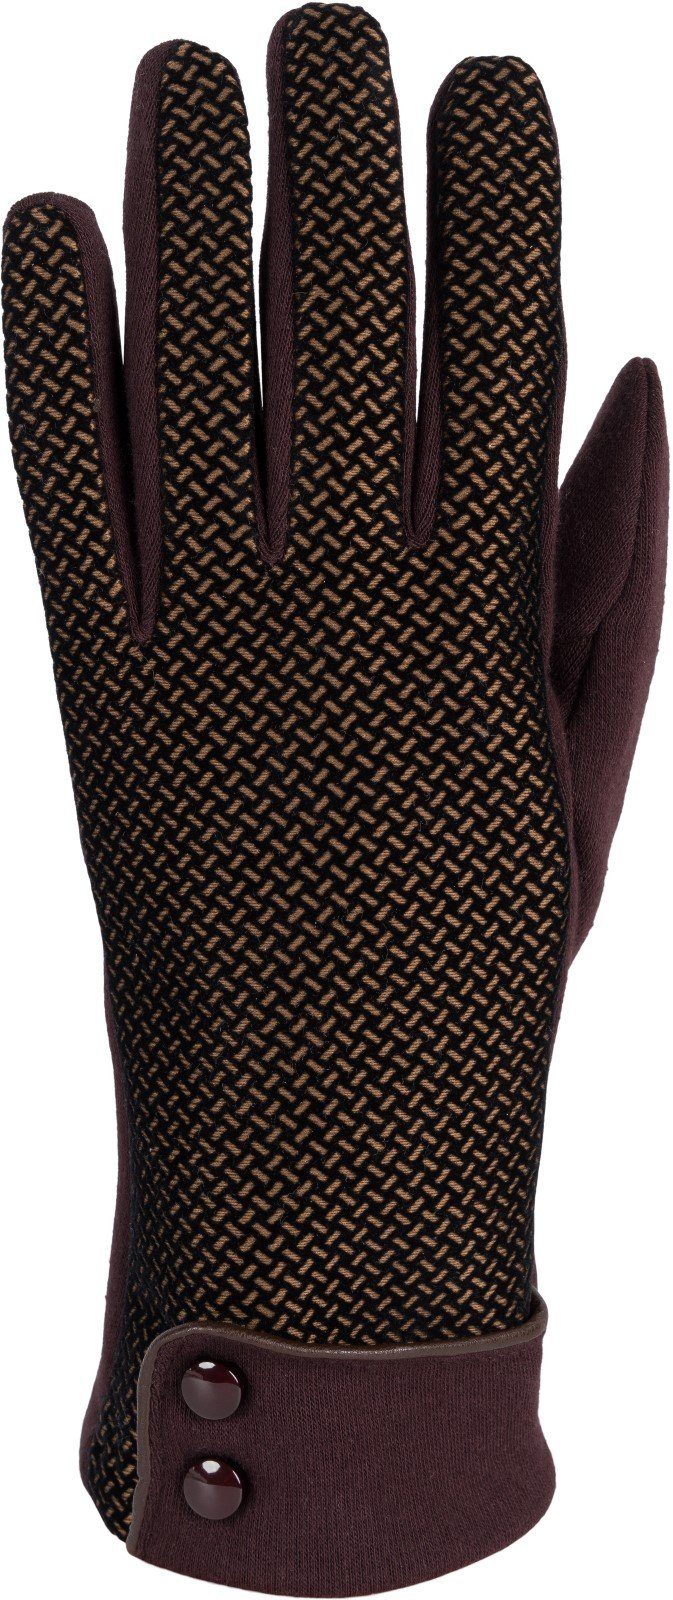 Touchscreen Muster Baumwollhandschuhe Riffel mit Handschuhe weichem styleBREAKER Dunkelbraun